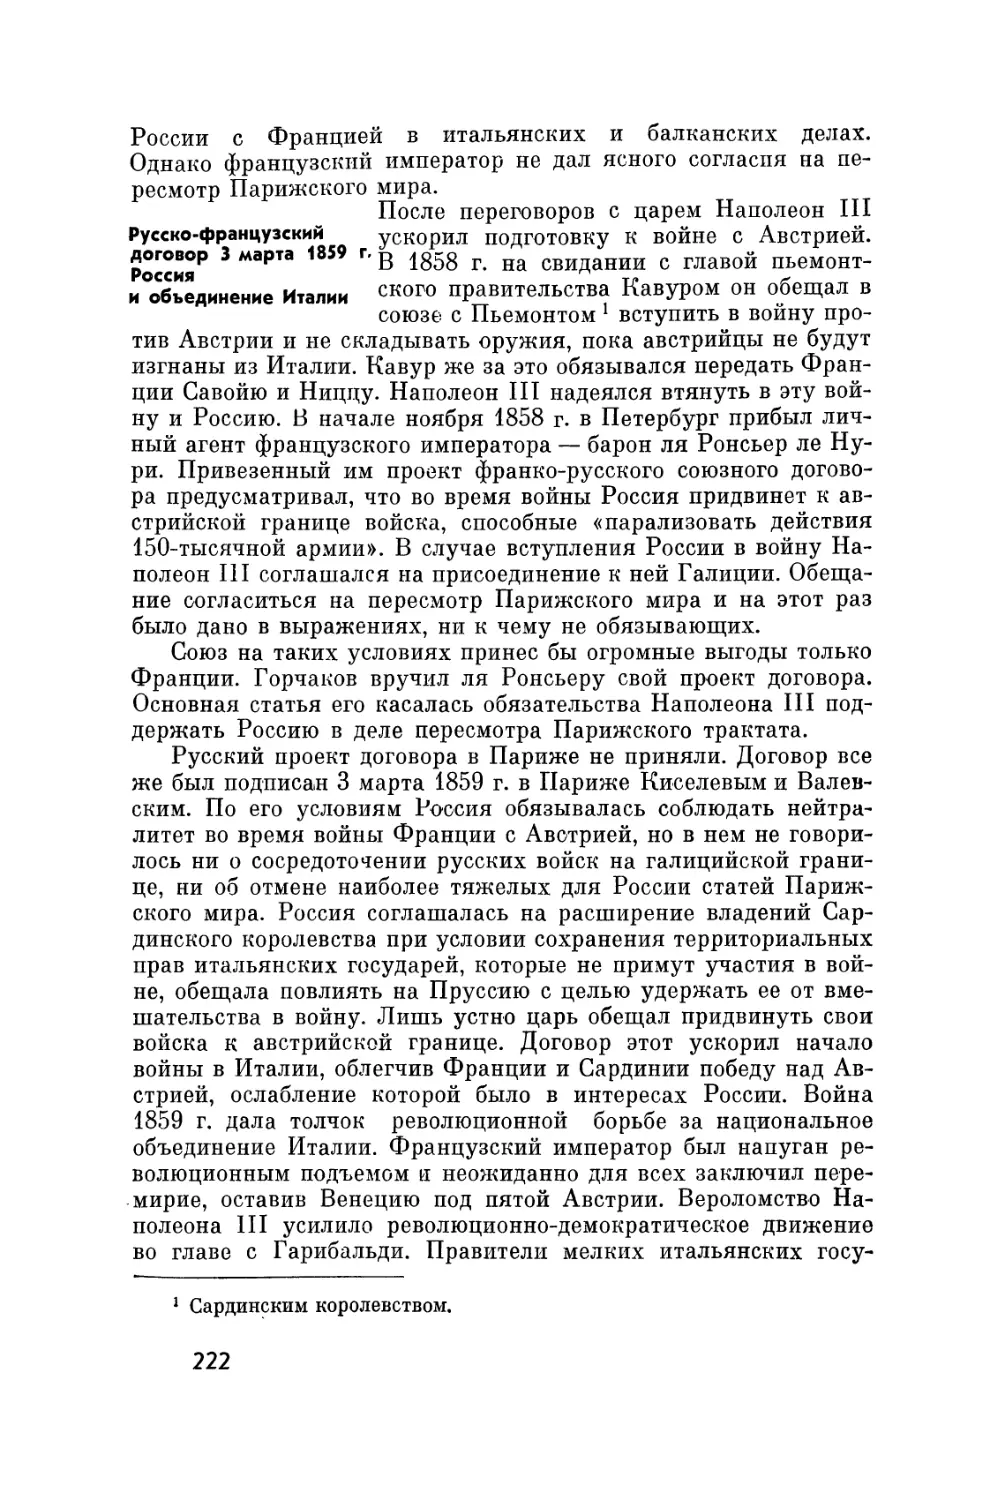 Русско-французский договор 3 марта 1859 г. Россия и объединение Италии